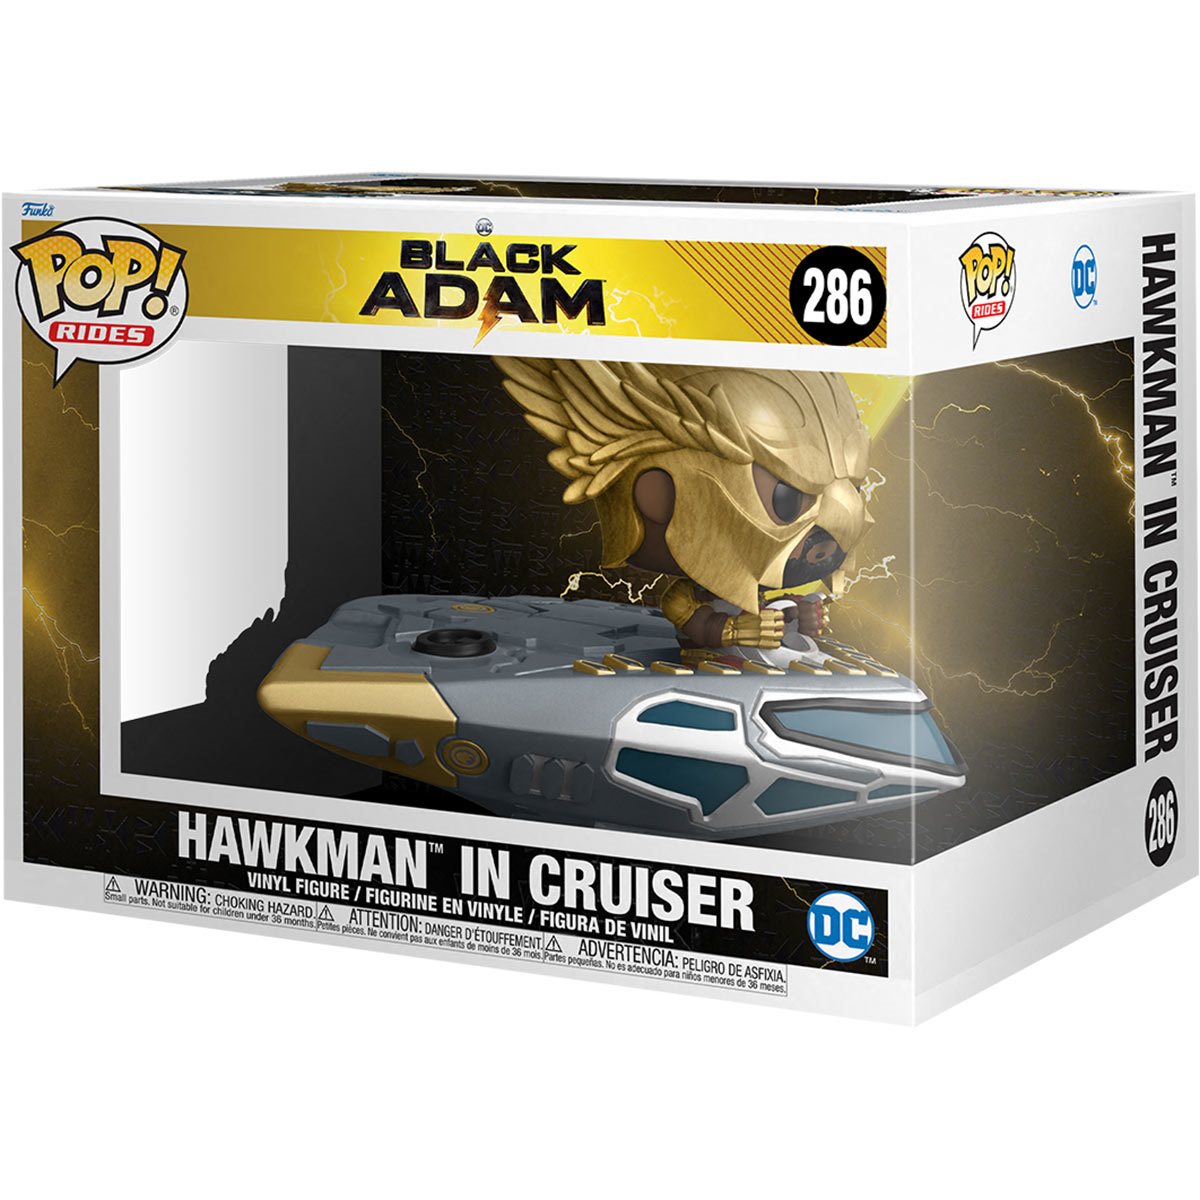 Funko Pop! Ride: Black Adam - Hawkman in Cruiser Super Deluxe